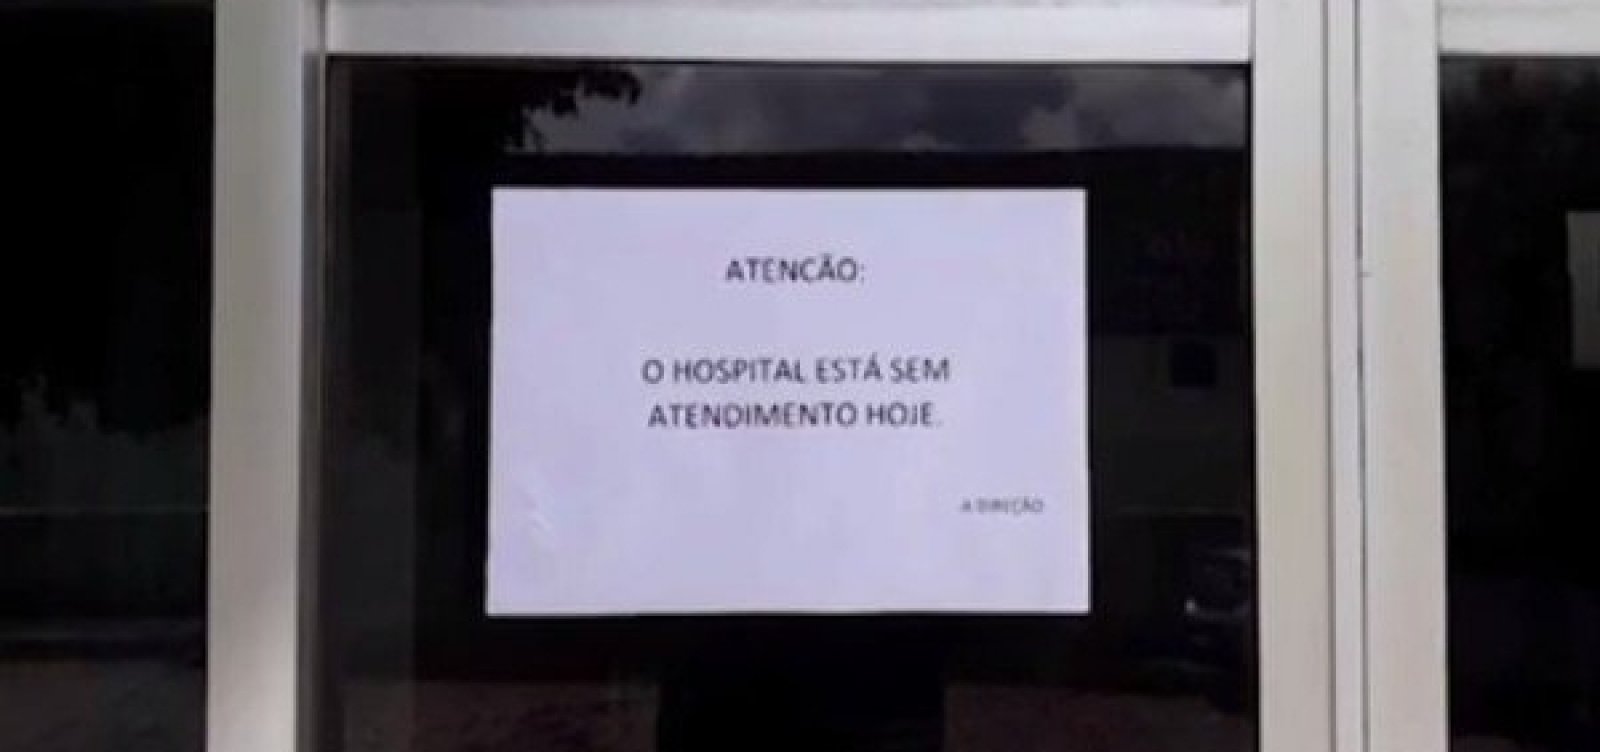 Funcionários do único hospital de Itanhém paralisam as atividades